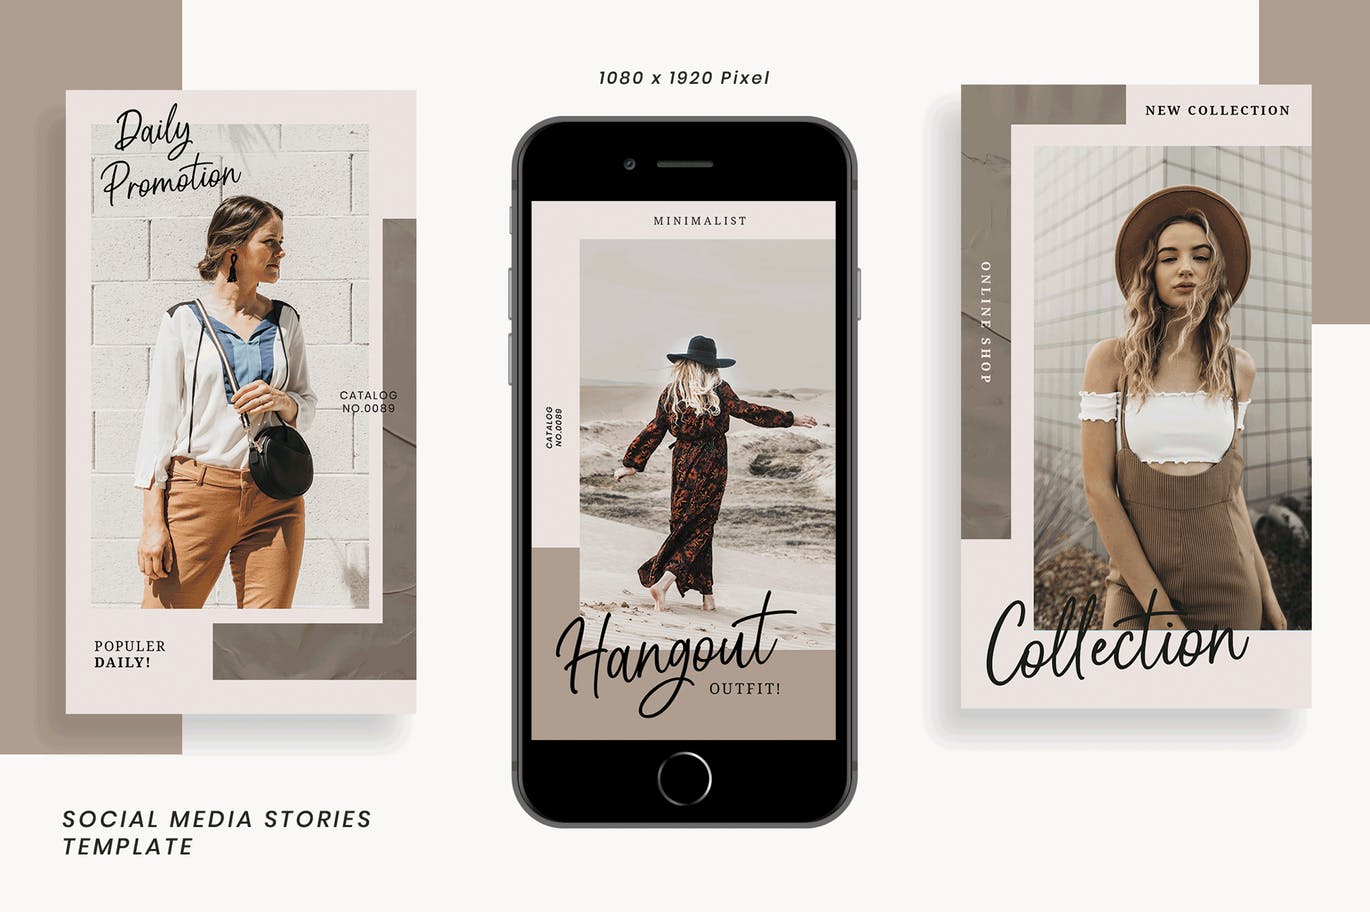 简约风格Instagram社交媒体设计广告图设计模板素材库精选 Herliana Instagram Story Template插图(1)